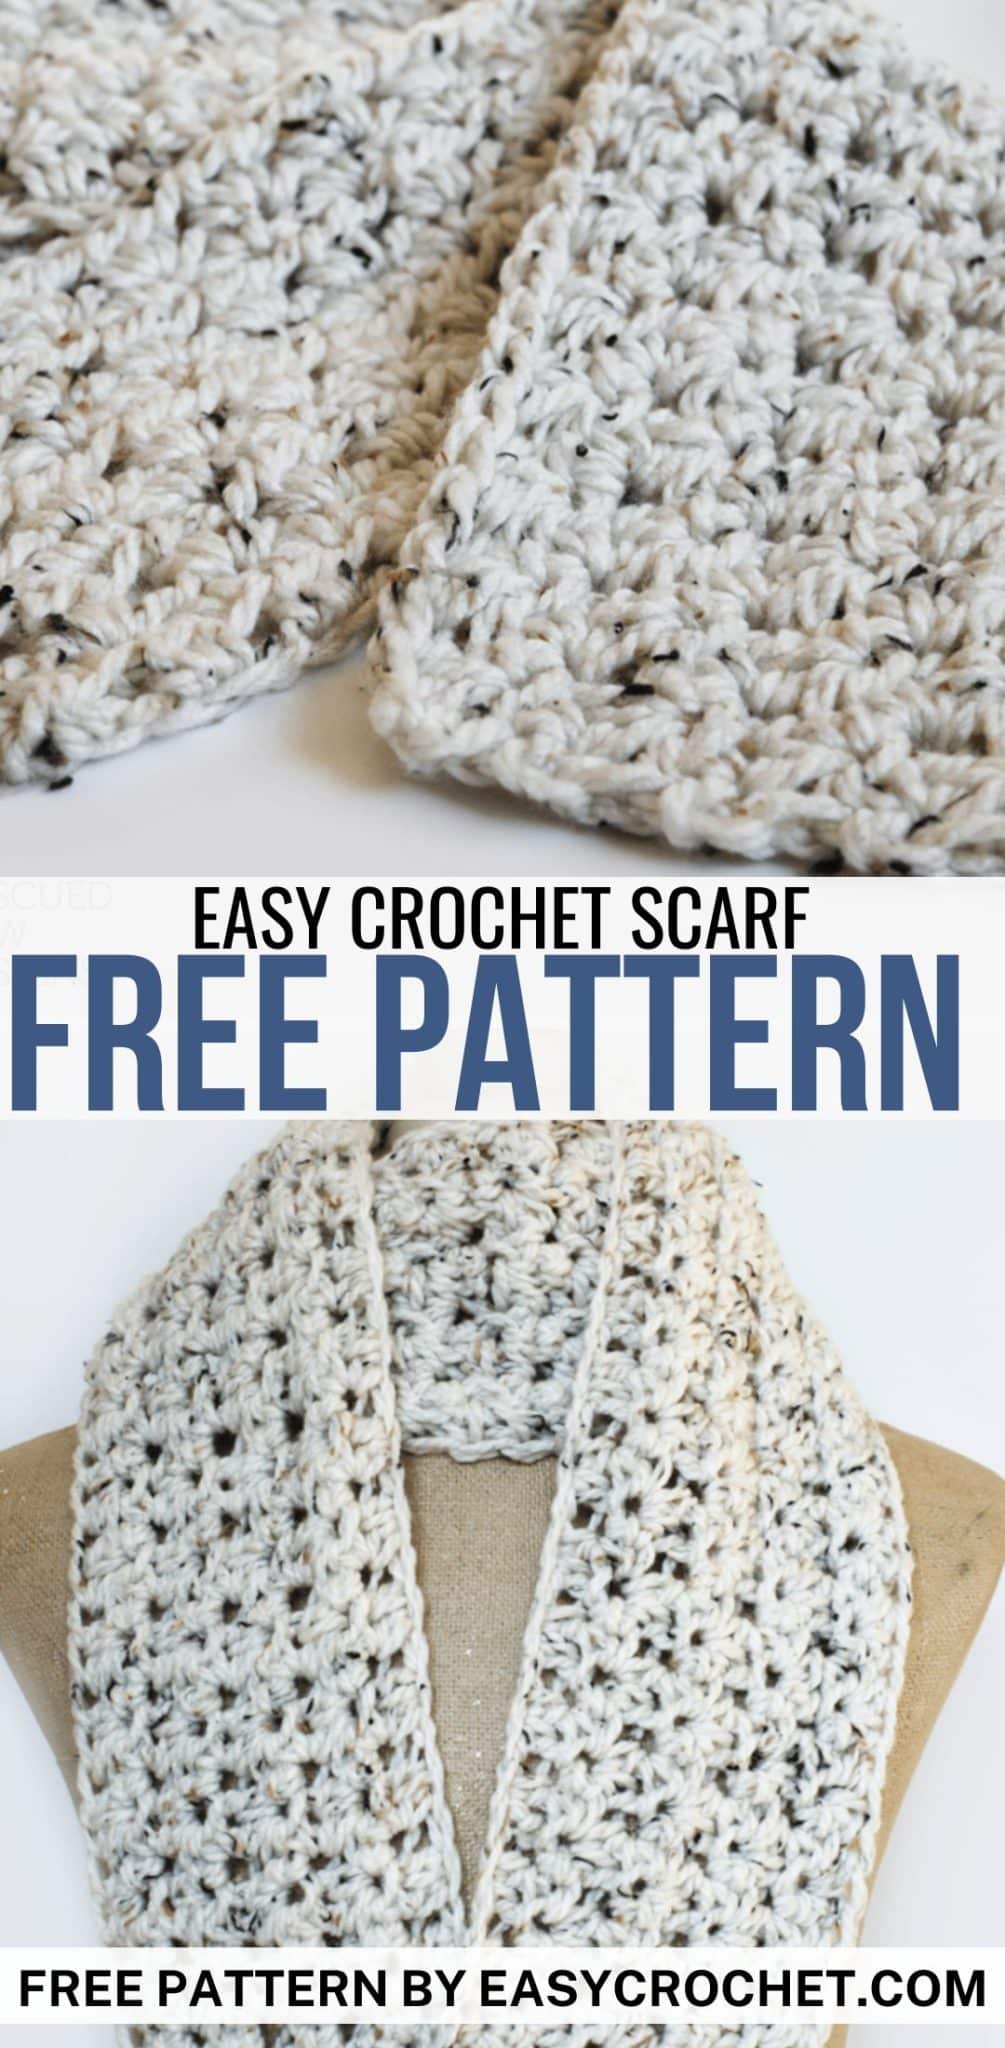 Free Crochet Scarf Pattern - Easy Crochet